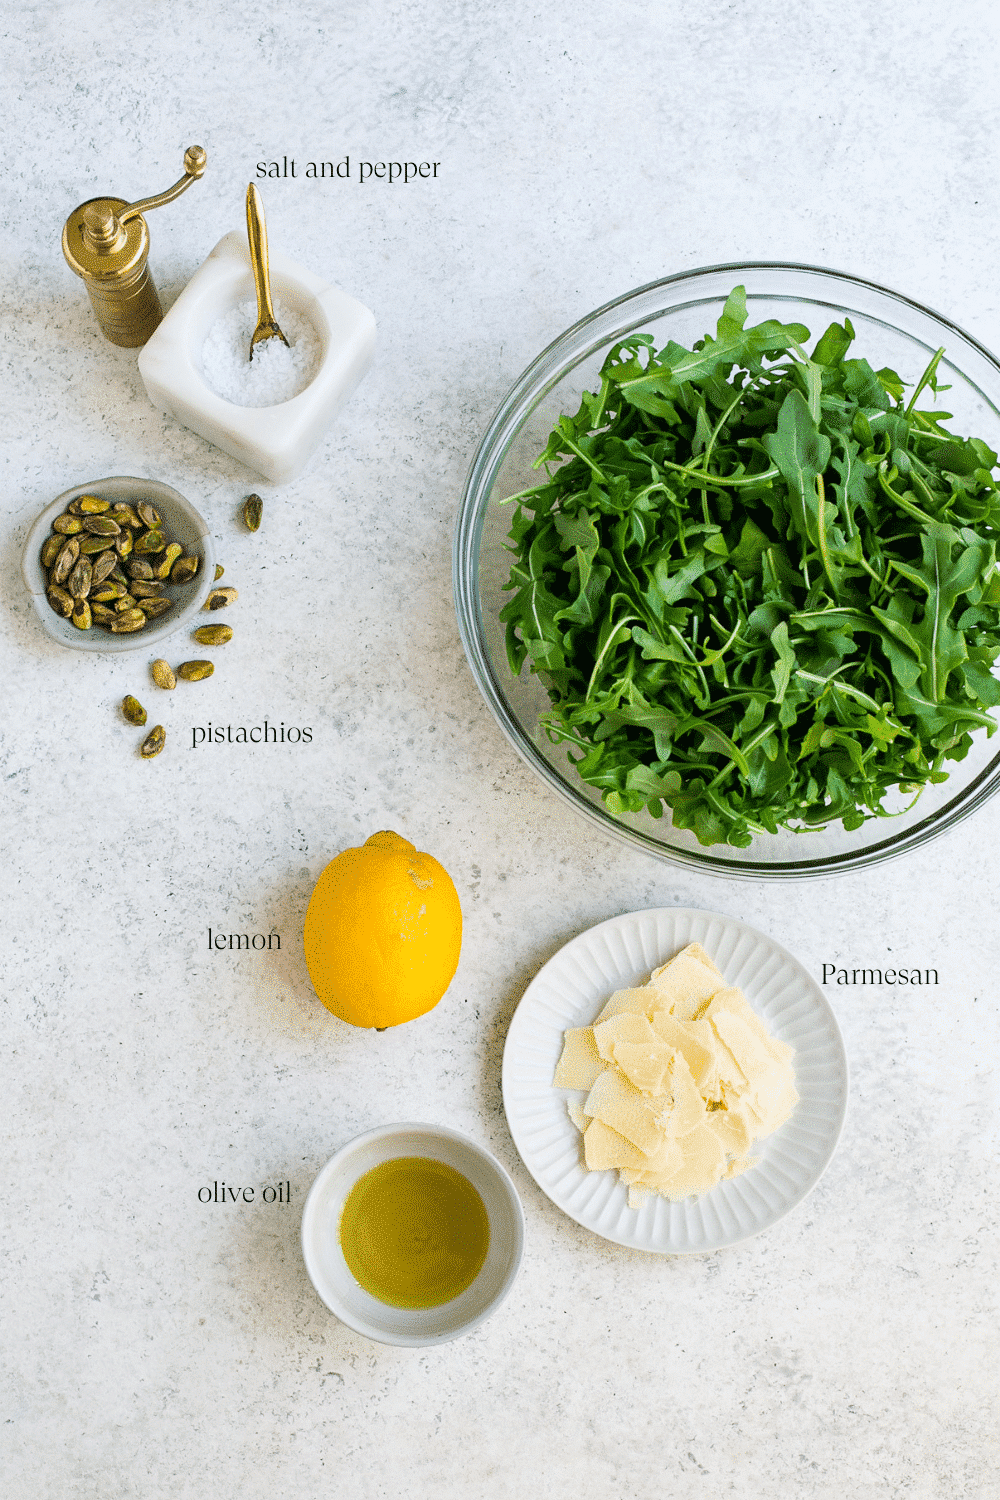 Ingredients for arugula salad.